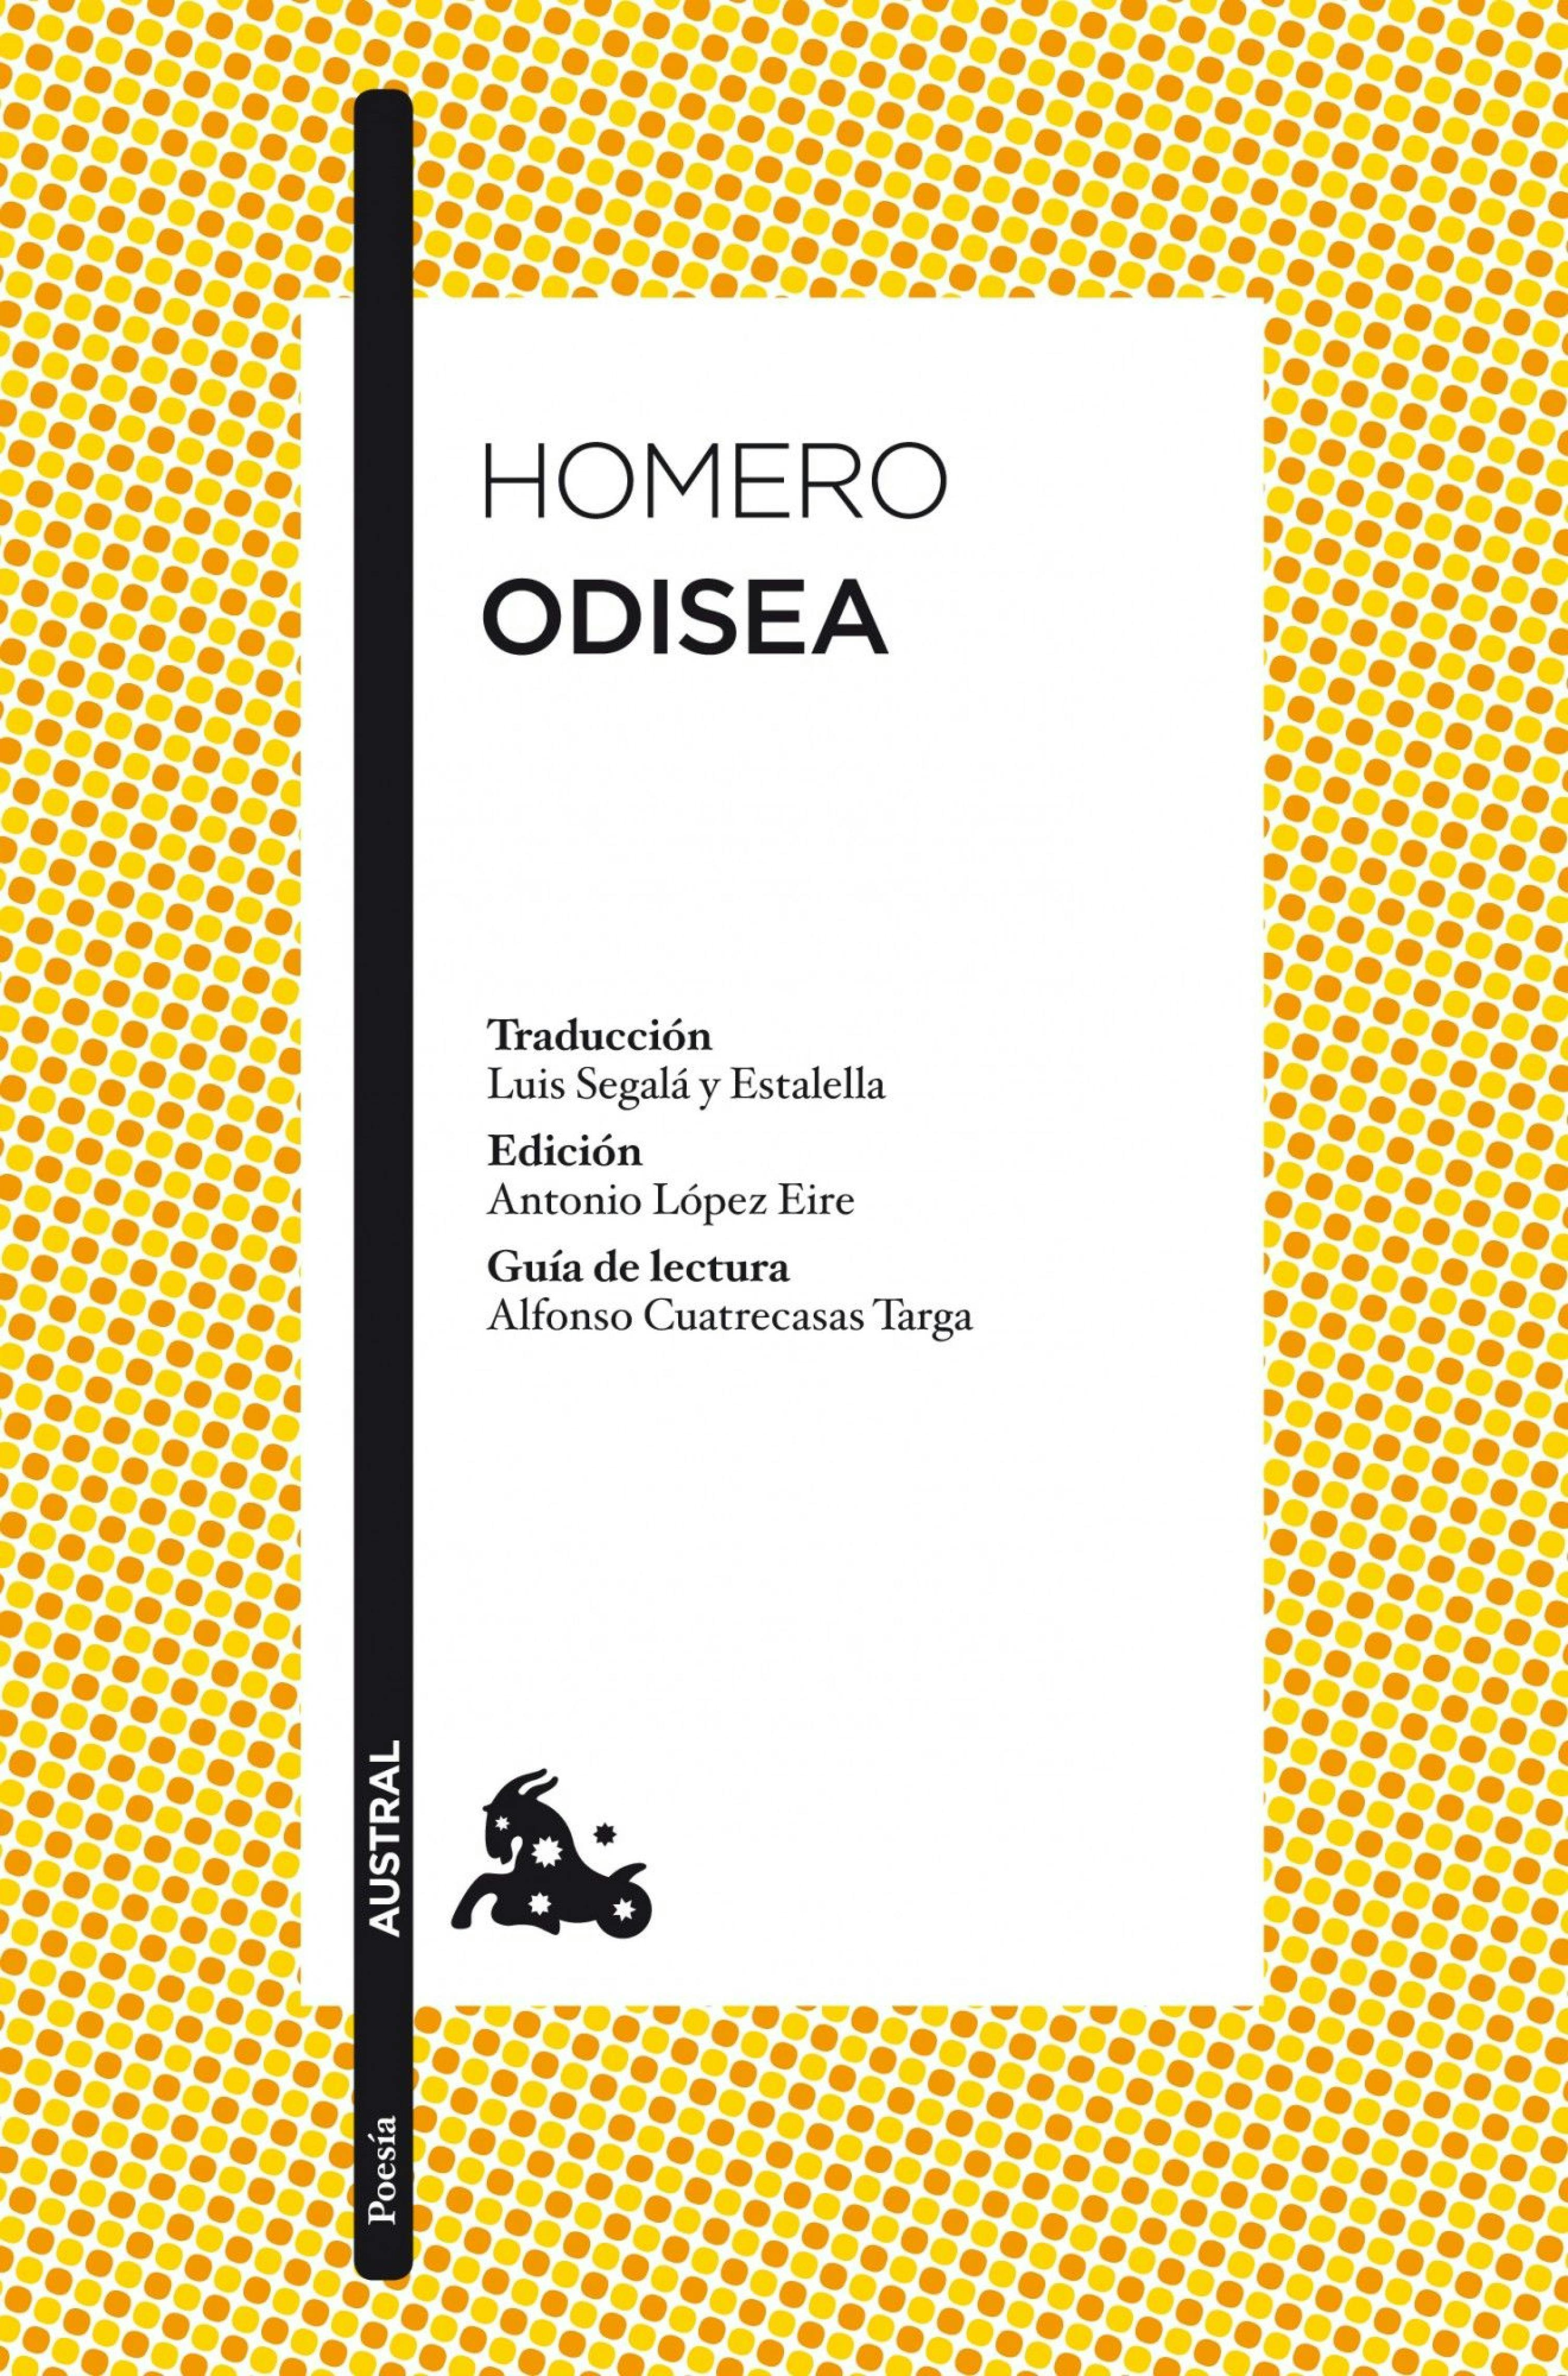 Odisea: Traducción de Luis Segalà y Estalella. Edición de Antonio López Eire. Guía de lectura de Alfonso Cuatrecasas Targa - undefined